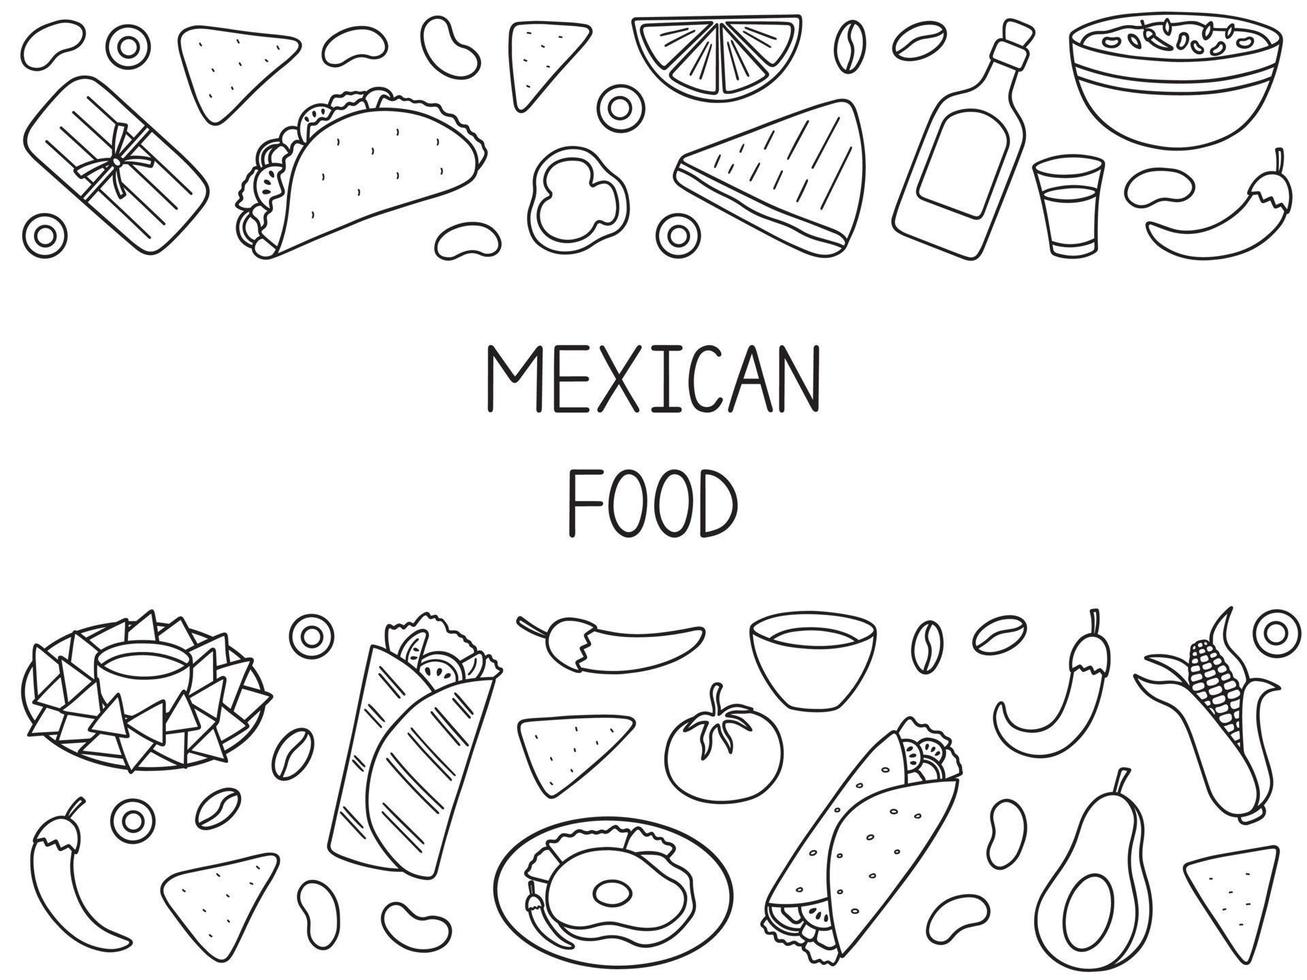 ensemble de griffonnages de cuisine mexicaine. cuisine mexicaine. burrito, tacos, nachos en style croquis. illustration de vecteur dessiné à la main isolé sur fond blanc